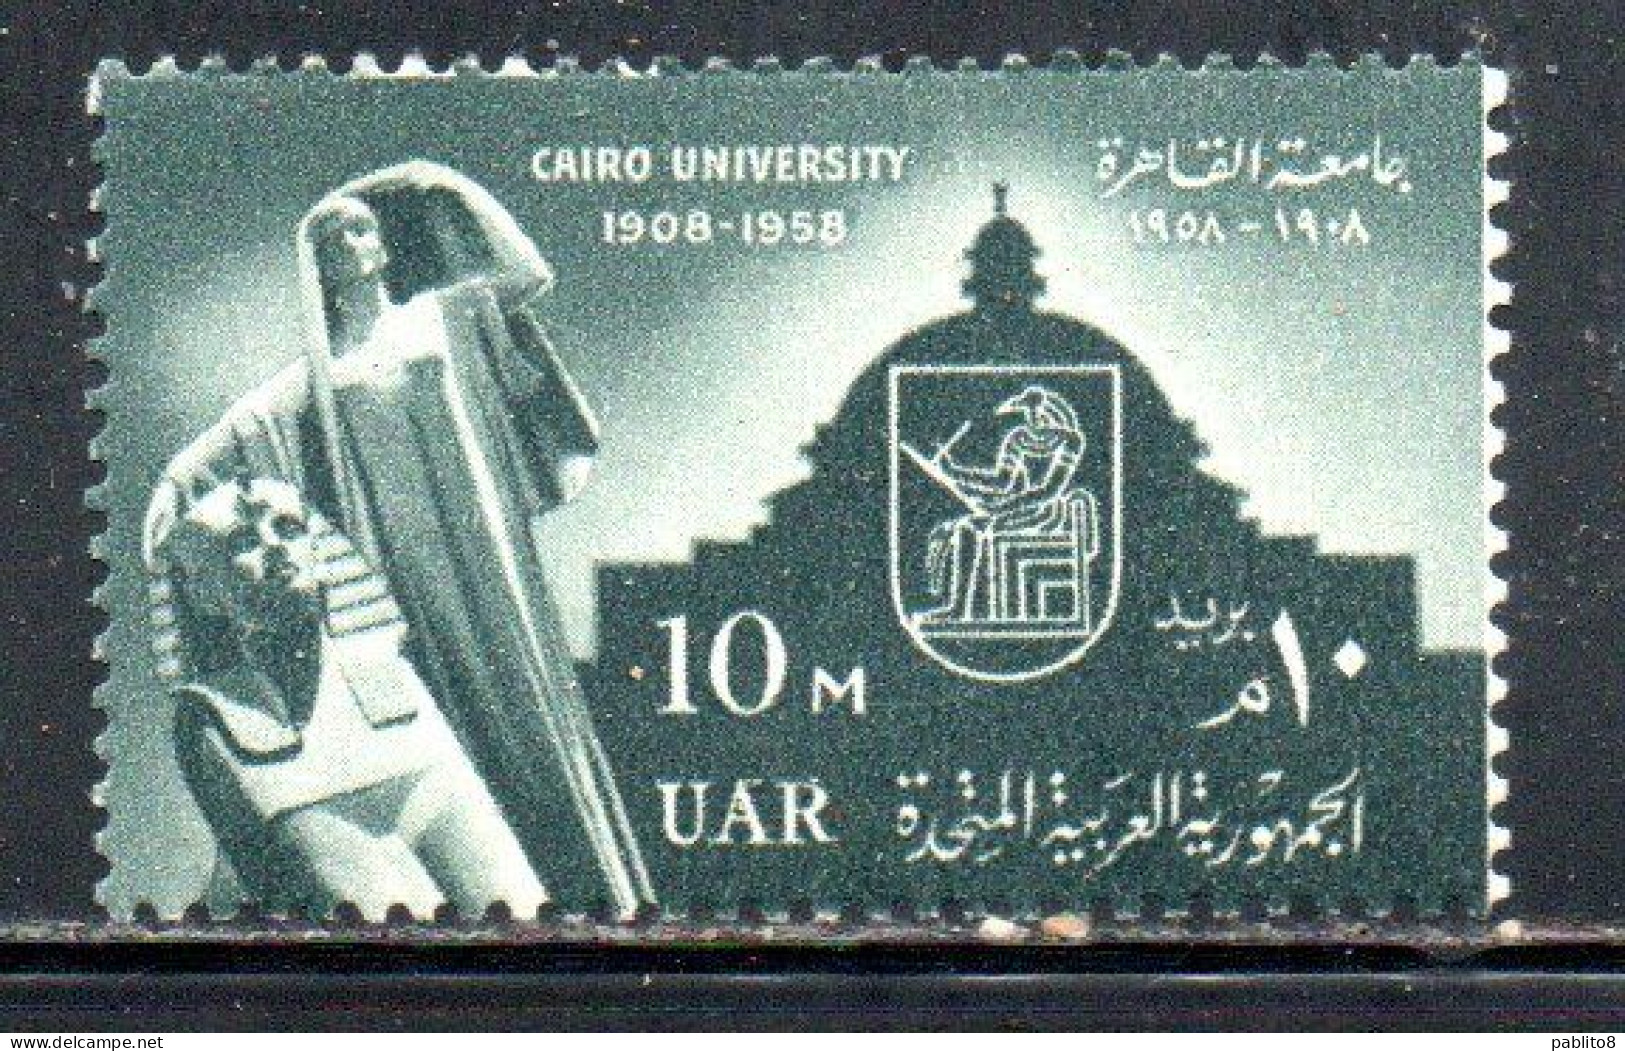 UAR EGYPT EGITTO 1958 50th ANNIVERSARY OF CAIRO UNIVERSITY 10m  MNH - Neufs